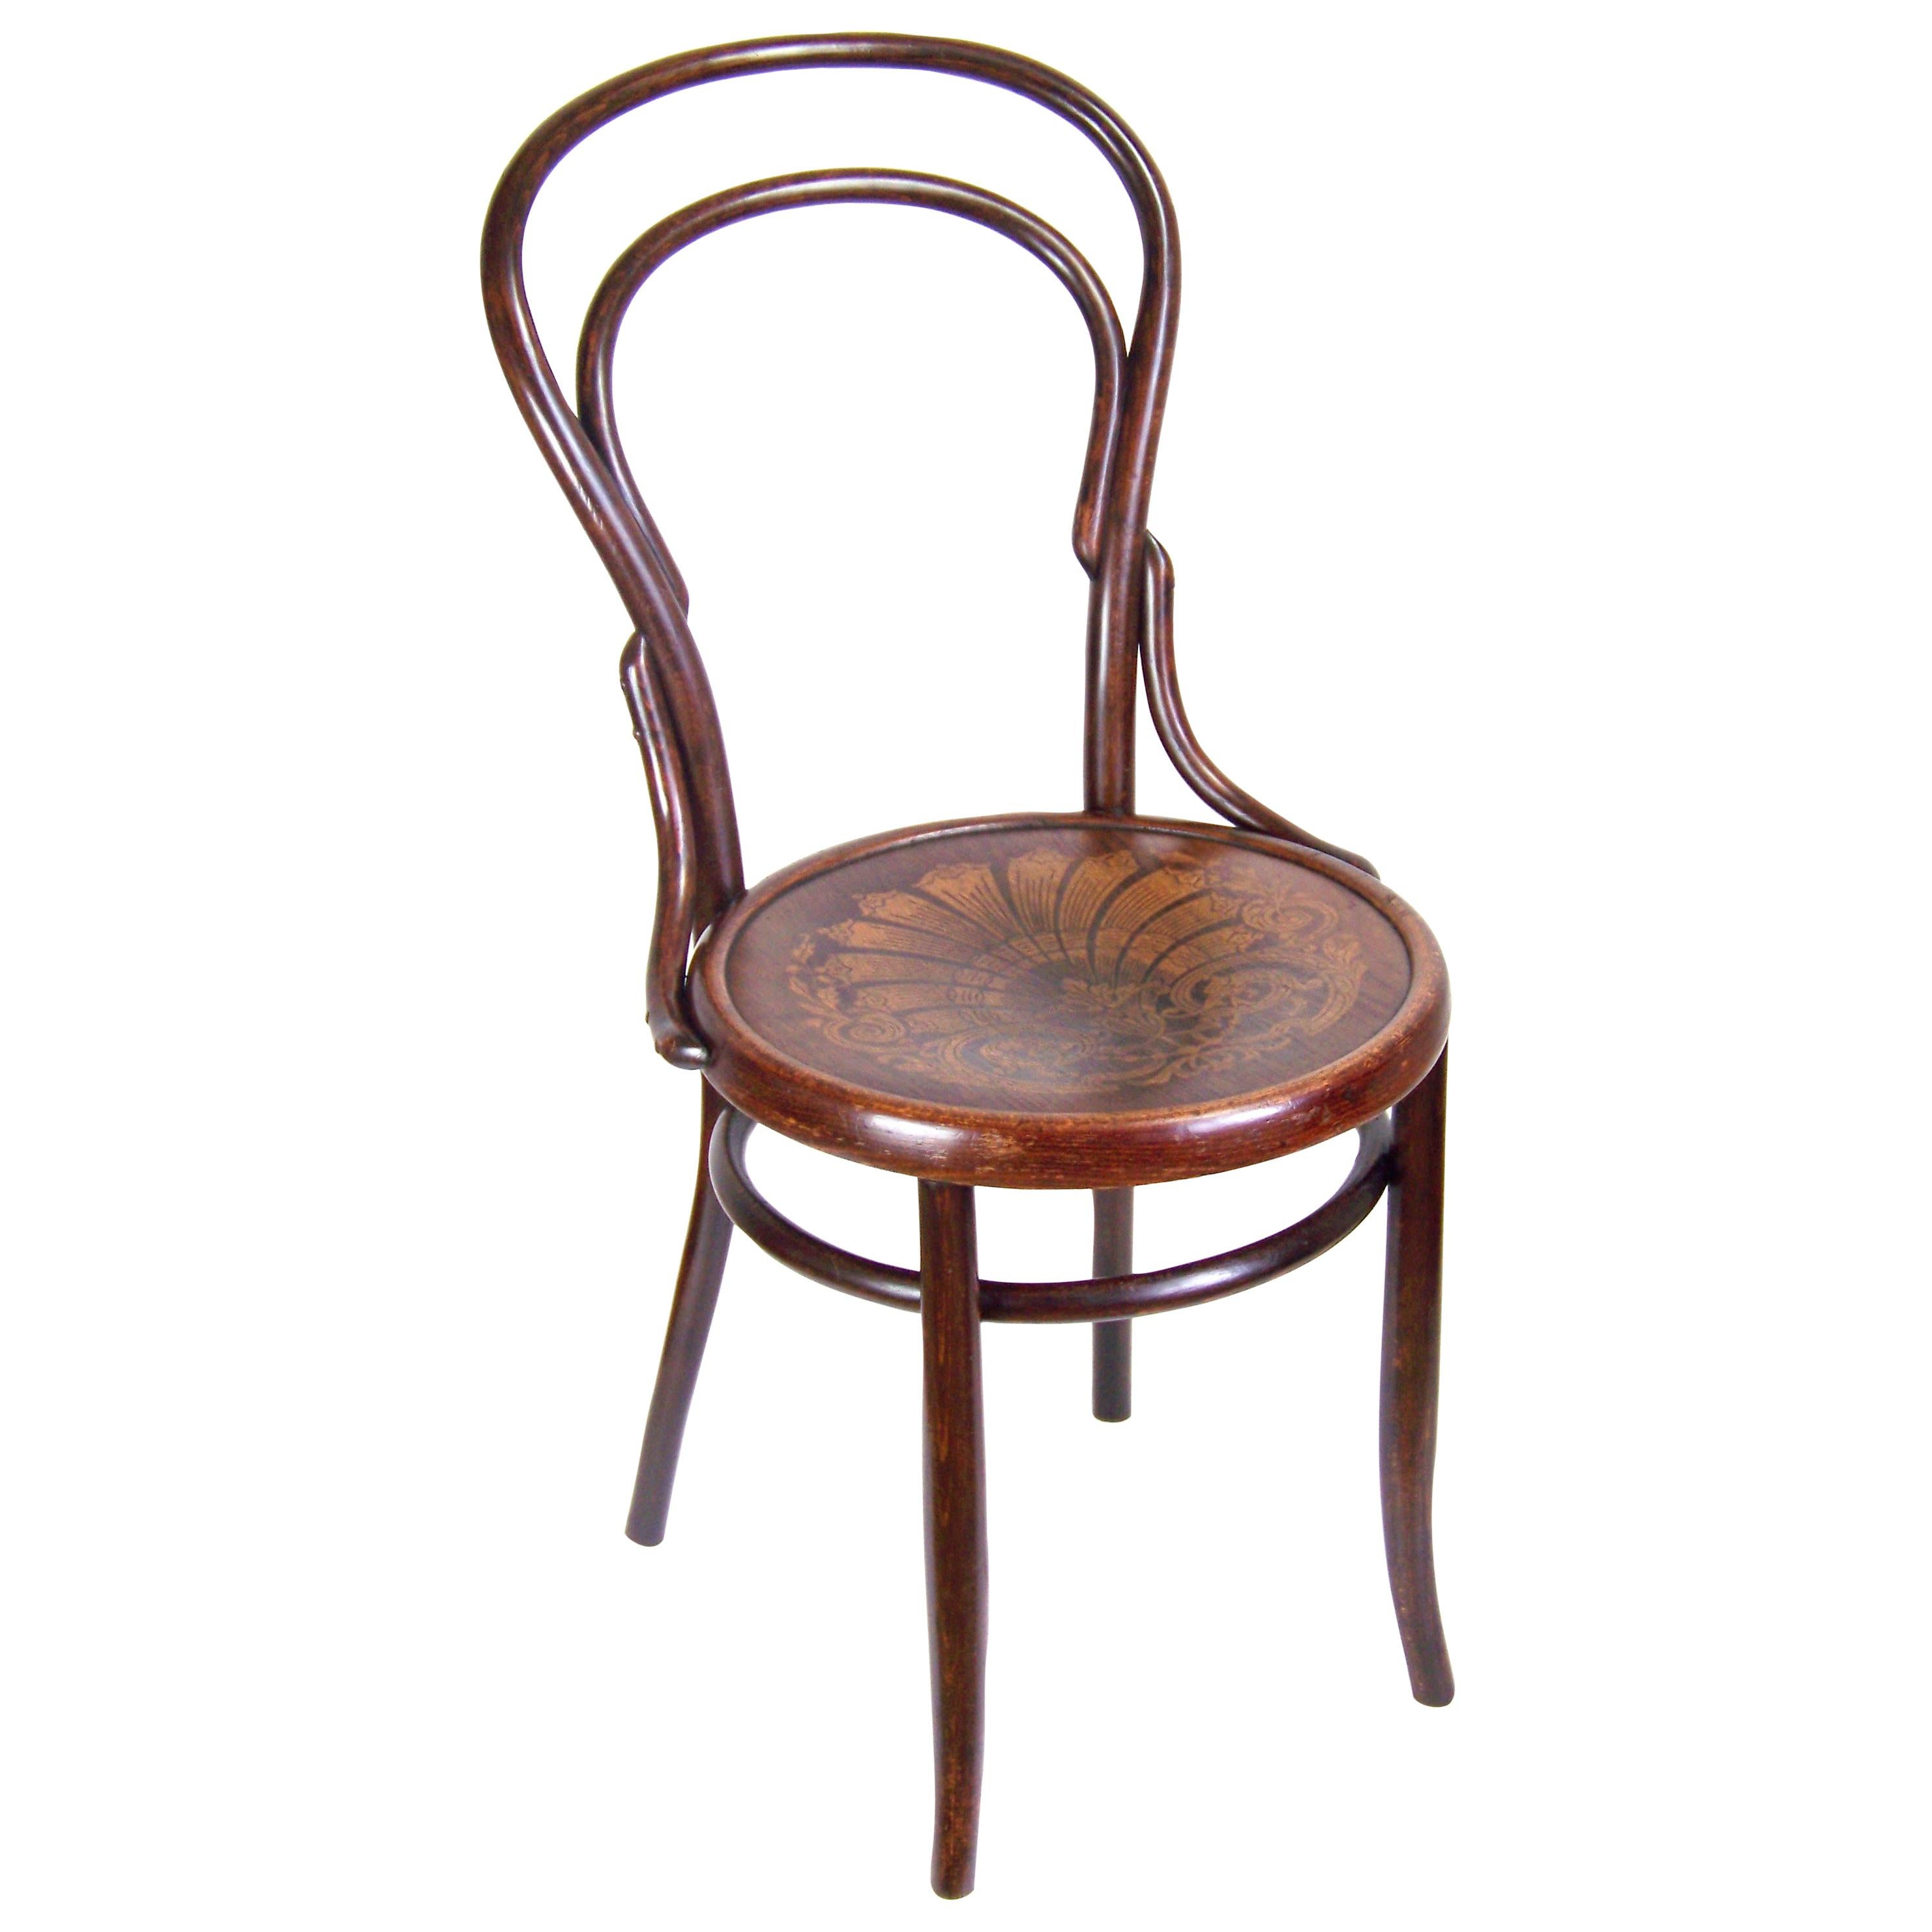 Chair Thonet Nr.14, circa 1900